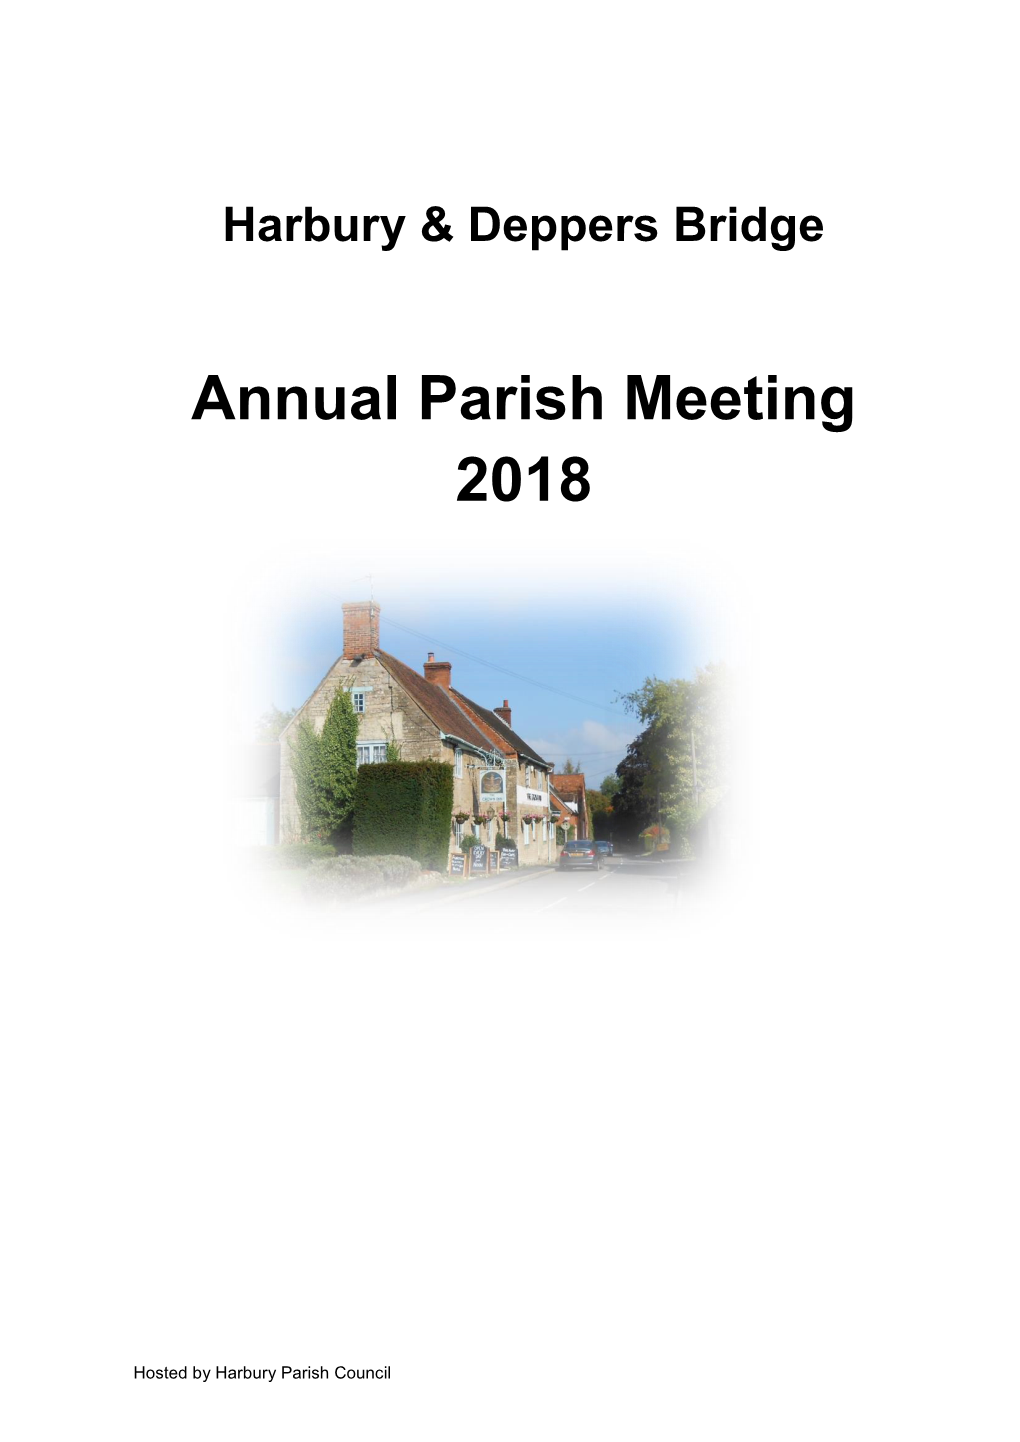 Annual Parish Meeting 2018